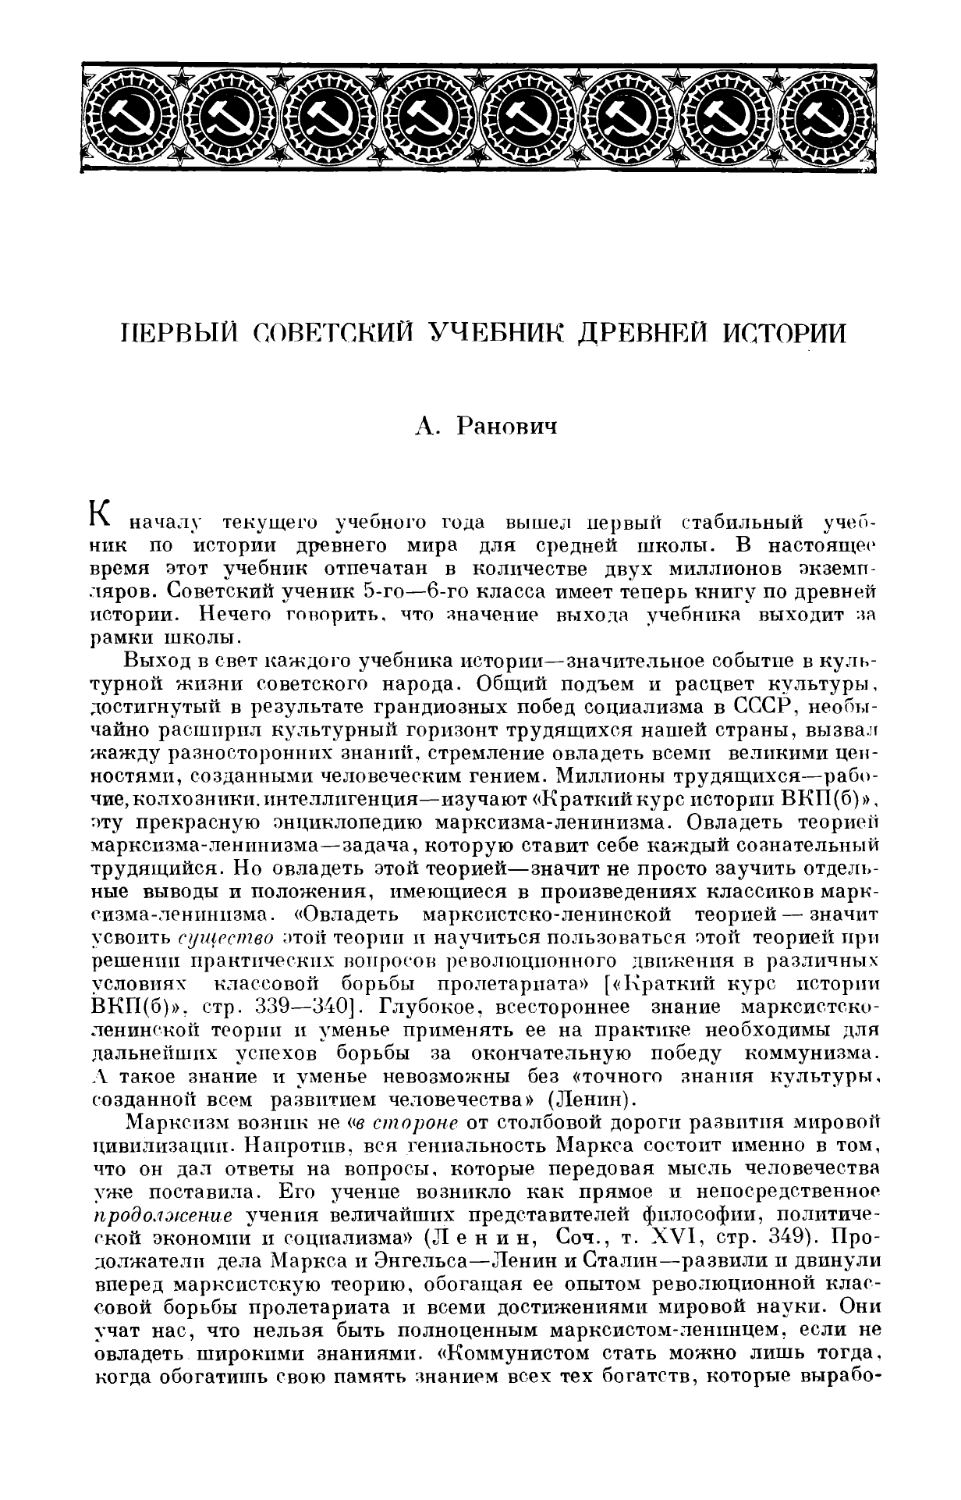 Ранович А.Б. – Первый советский учебник древней истории